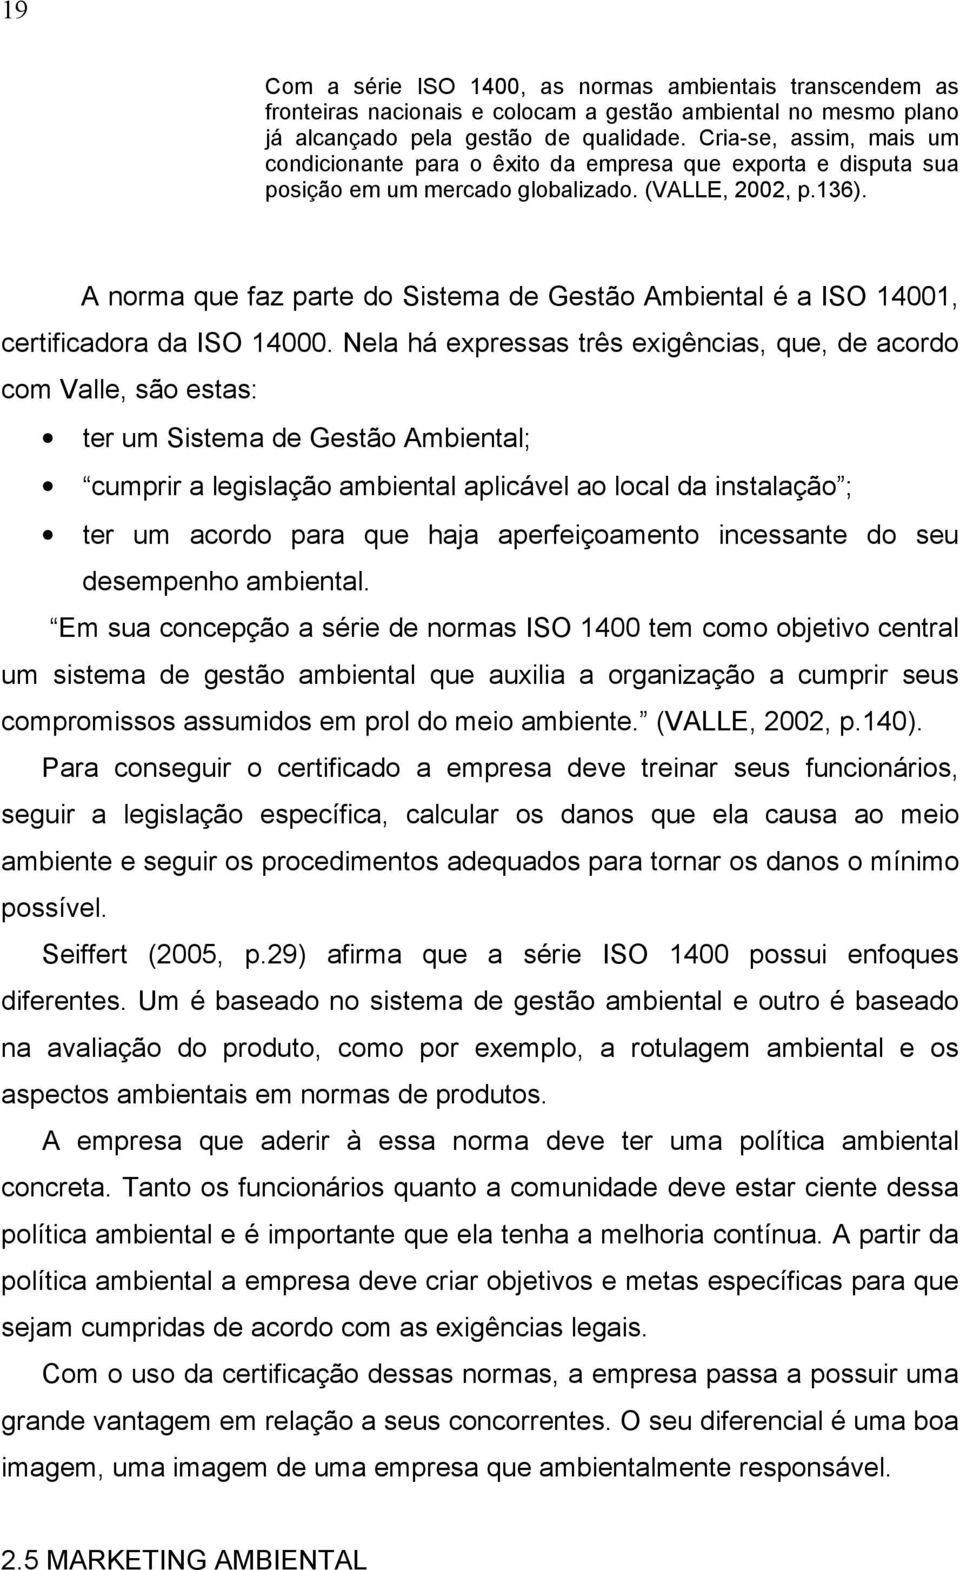 A norma que faz parte do Sistema de Gestão Ambiental é a ISO 14001, certificadora da ISO 14000.